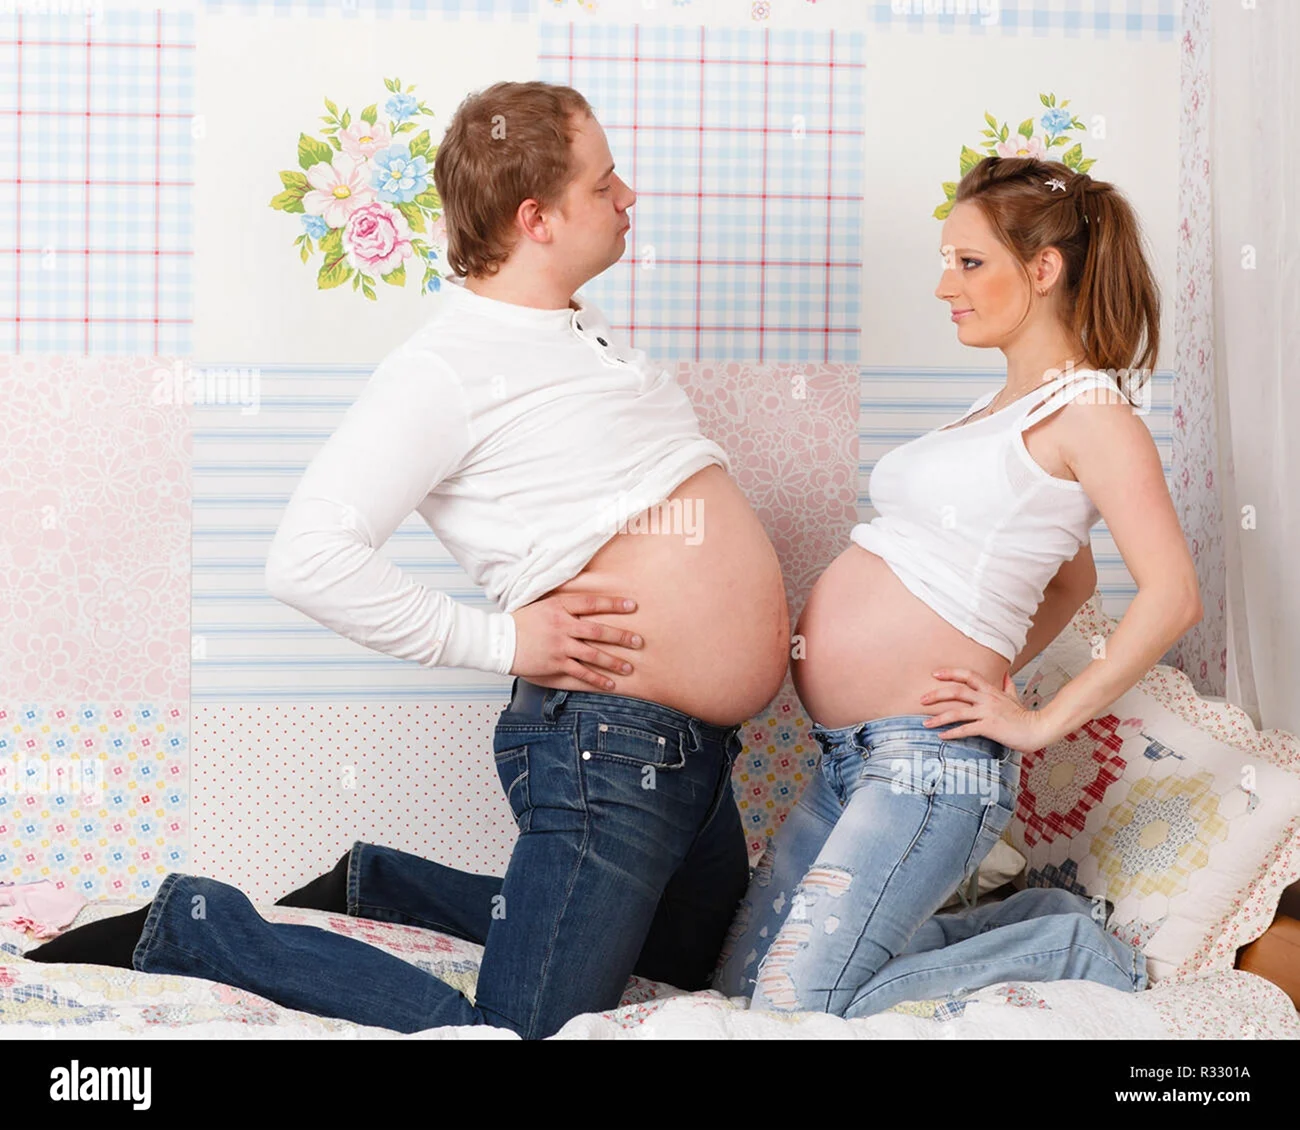 Беременная фотосессия в джинсах с детьми